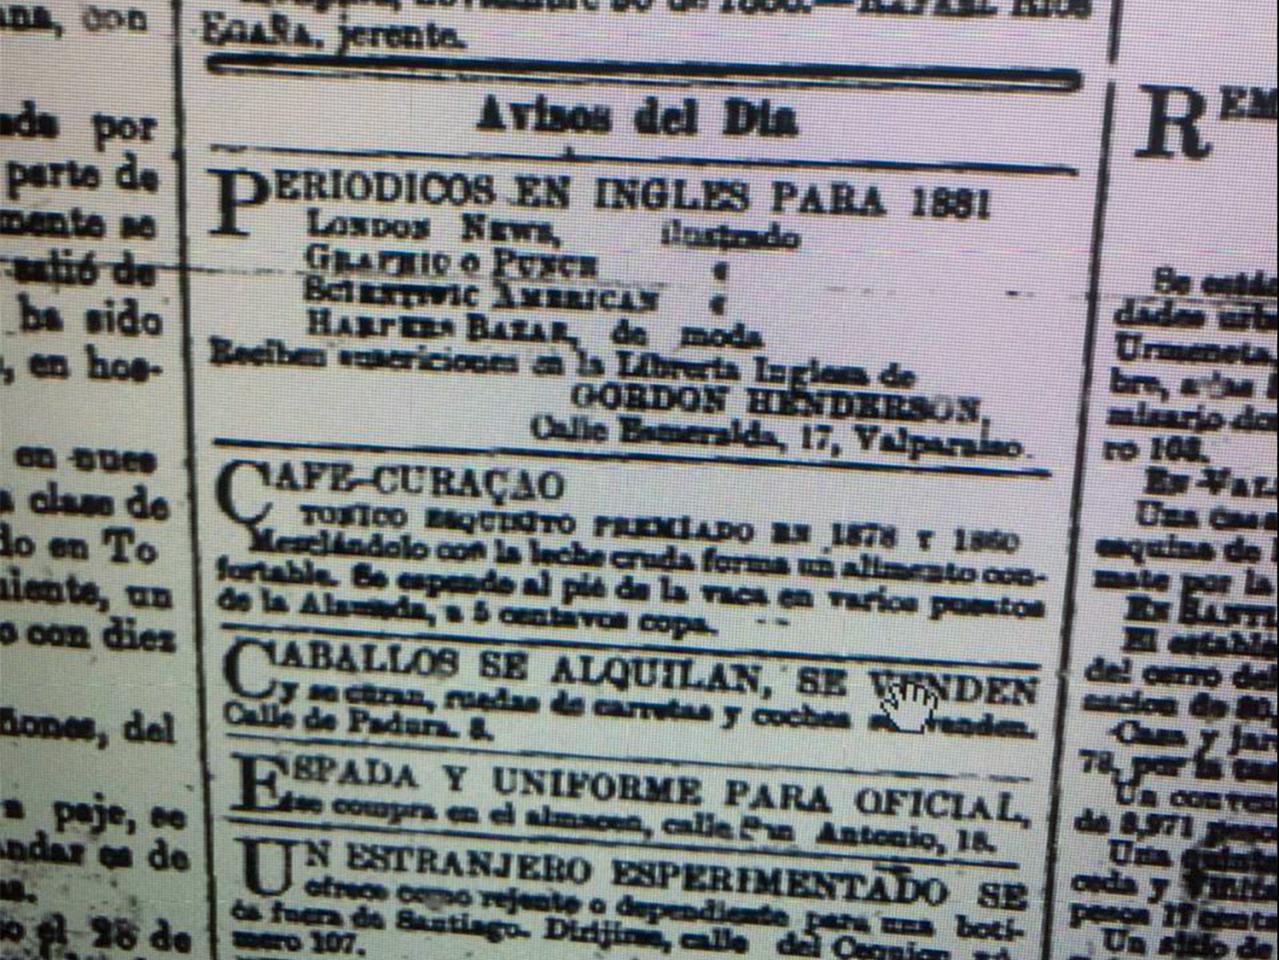 Avisos del Día. Periódicos en inglés para 1881